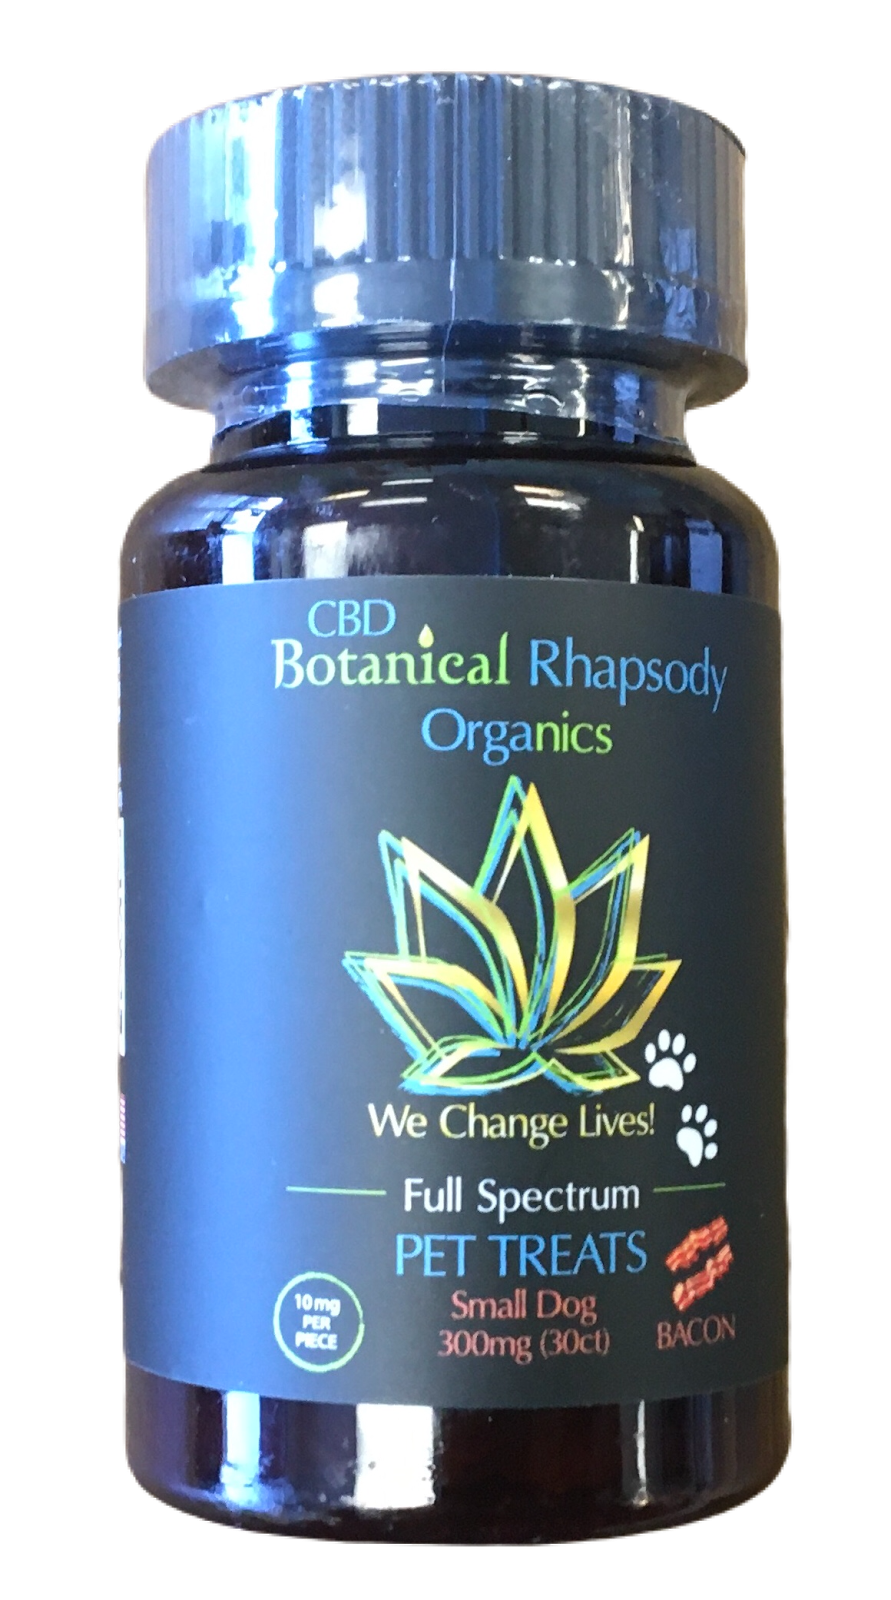 Botanical Rhapsody Organics (CBD Store) | 750 W Dimond Blvd #101, Anchorage, AK 99515, USA | Phone: (907) 771-4050